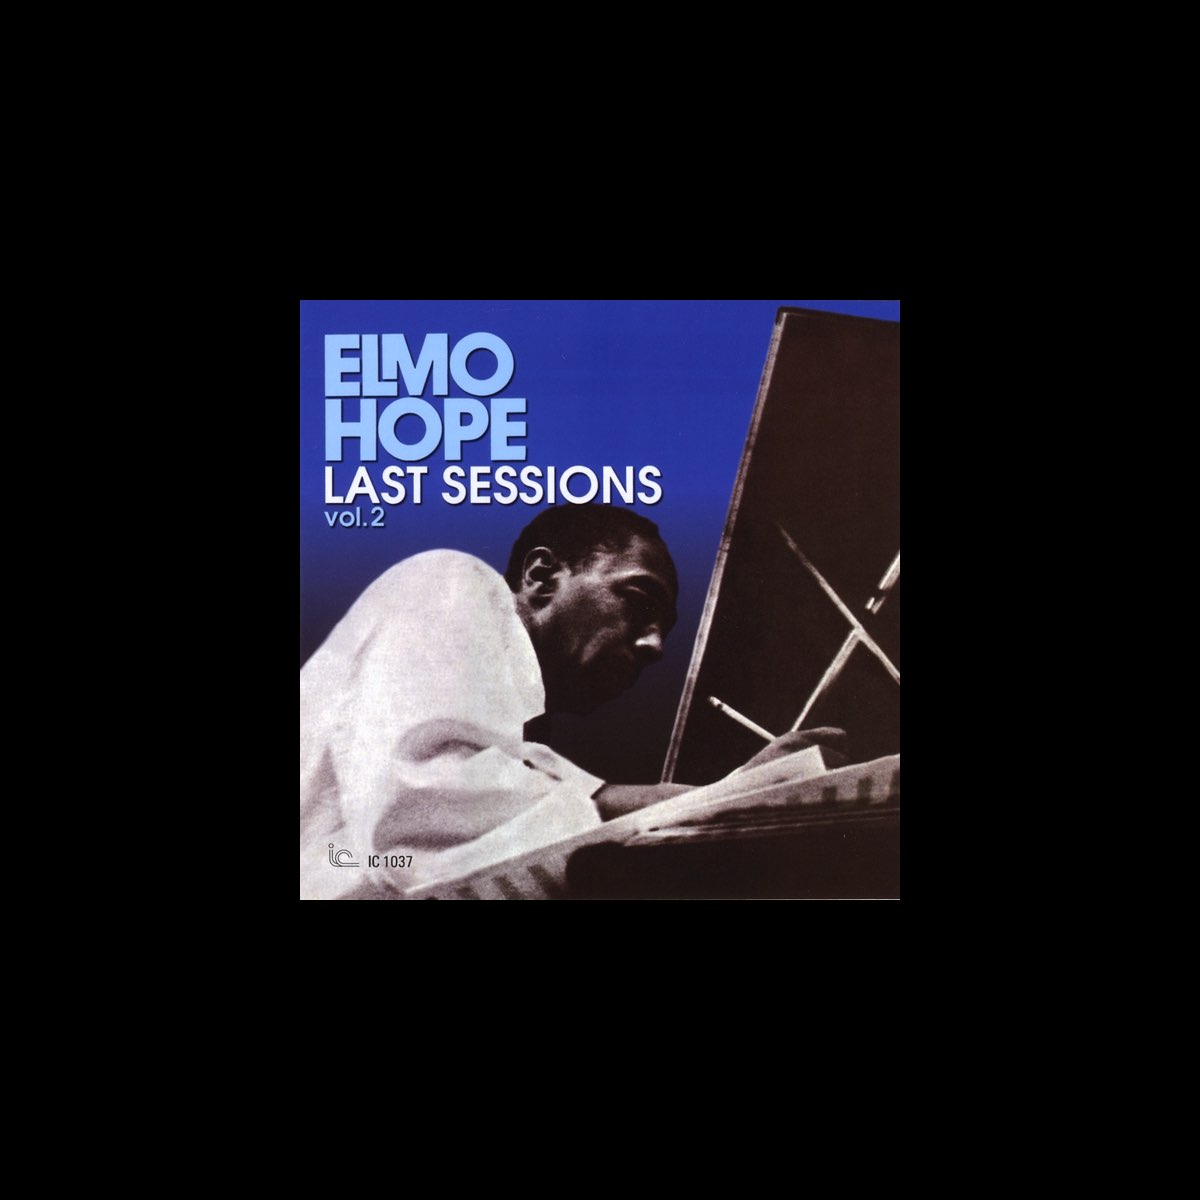 Elmo Hope Last Sessions, Vol. 2 by Elmo Hope on Apple Music